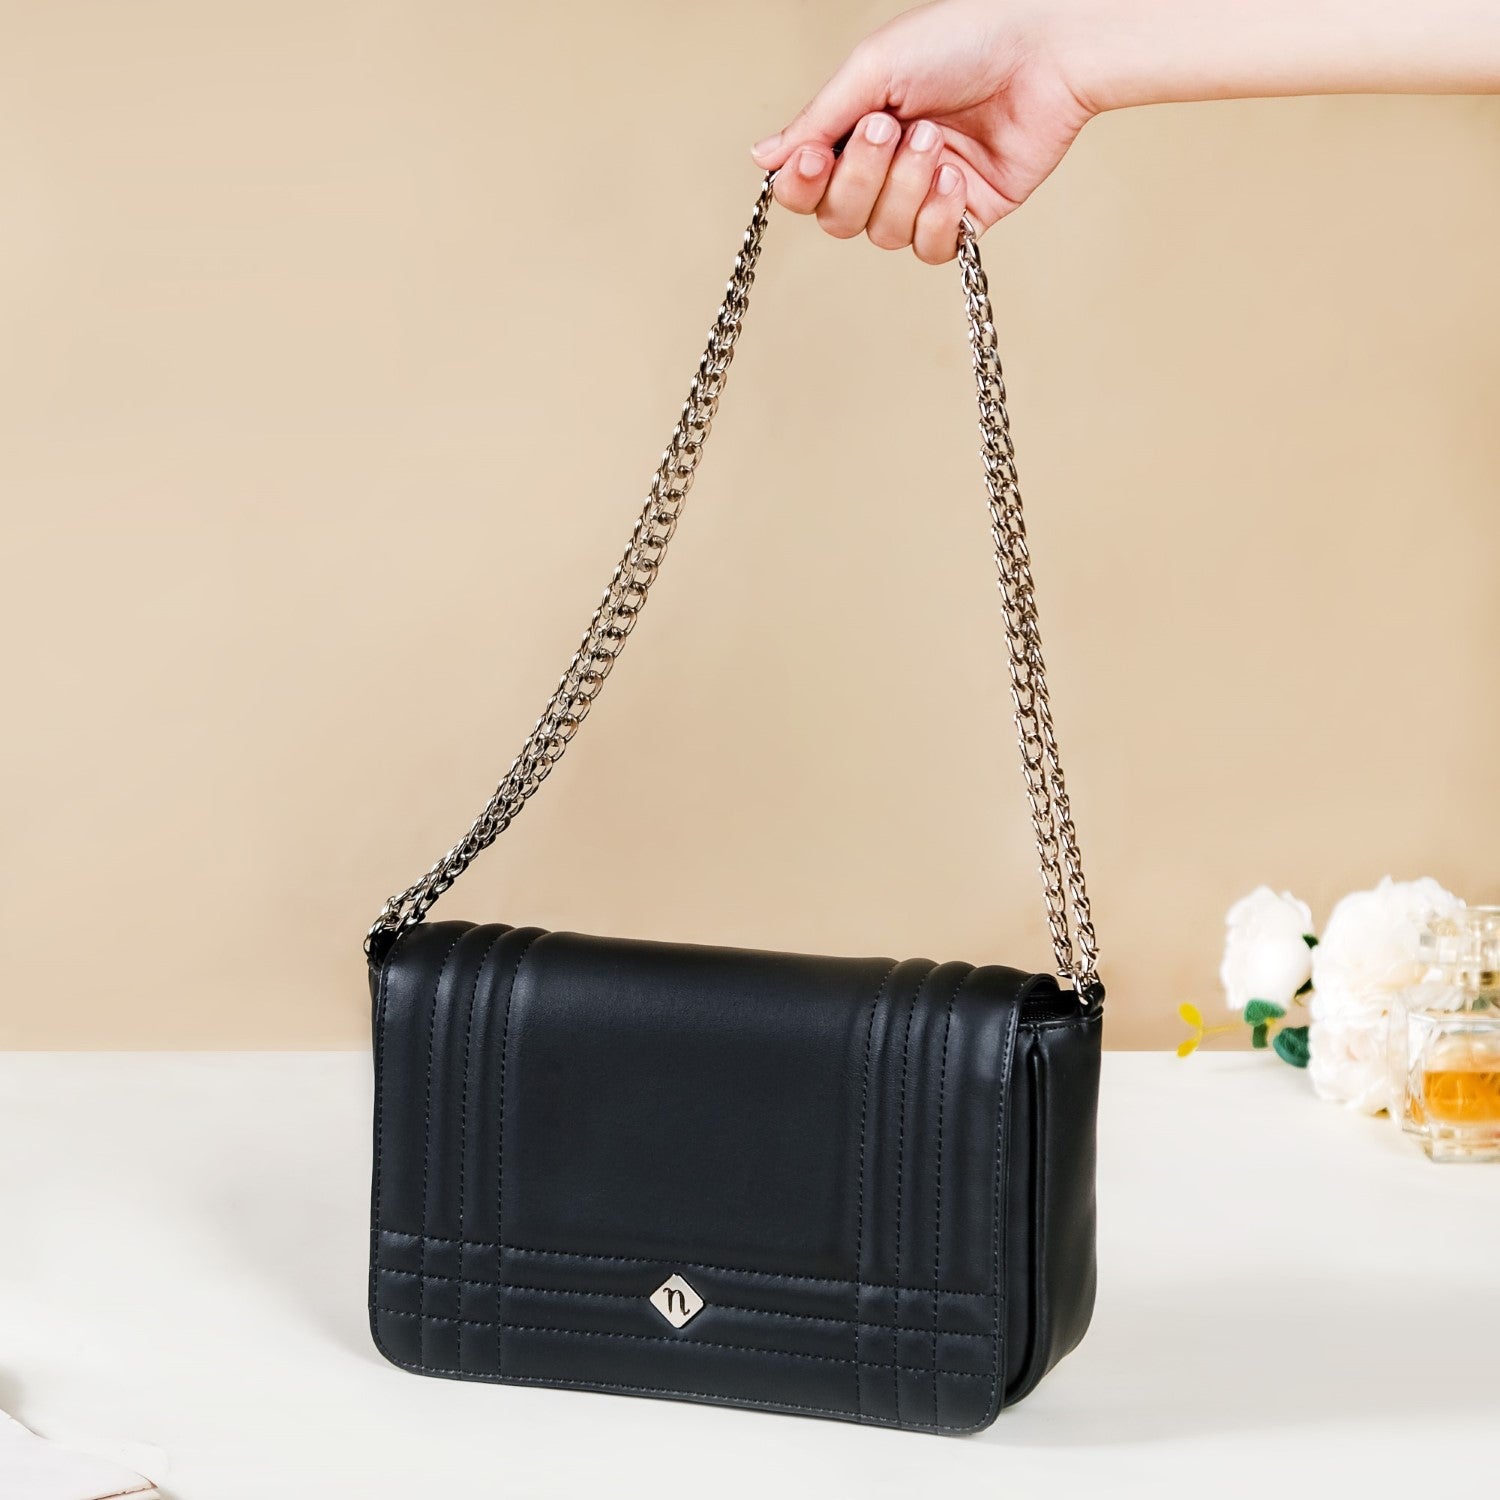 Buy HauteSauce Black Medium Shoulder Bag at Best Price @ Tata CLiQ